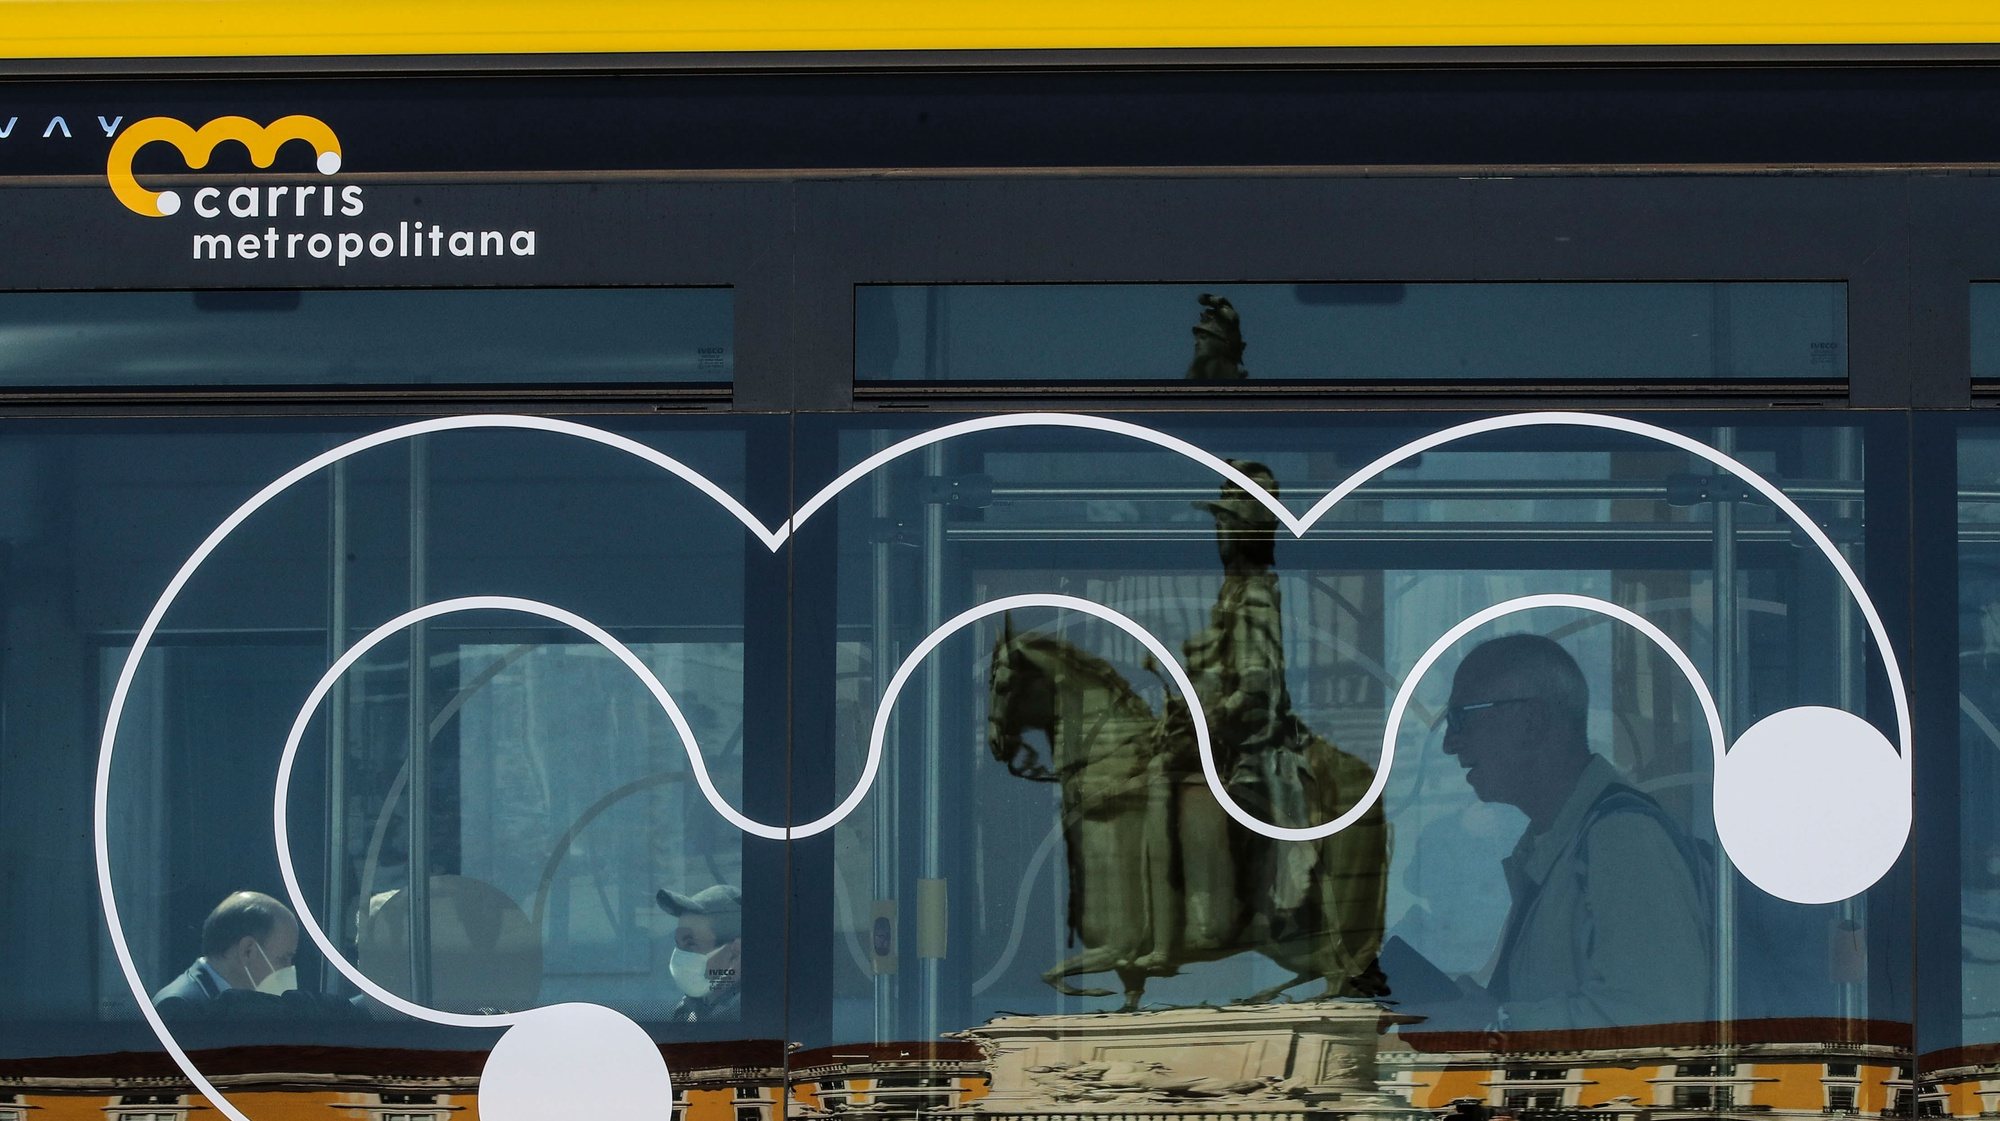 Cerimónia de lançamento da Carris Metropolitana realizada no Pátio da Galé, Lisboa, 1 de abril de 2022. O evento contou também com um pequeno desfile de moda, para dar a conhecer o fardamento da Carris Metropolitana, desenhado por Nuno Gama, e a exibição, dos novos autocarros com a nova imagem da Carris Metropolitana. MANUEL DE ALMEIDA/LUSA